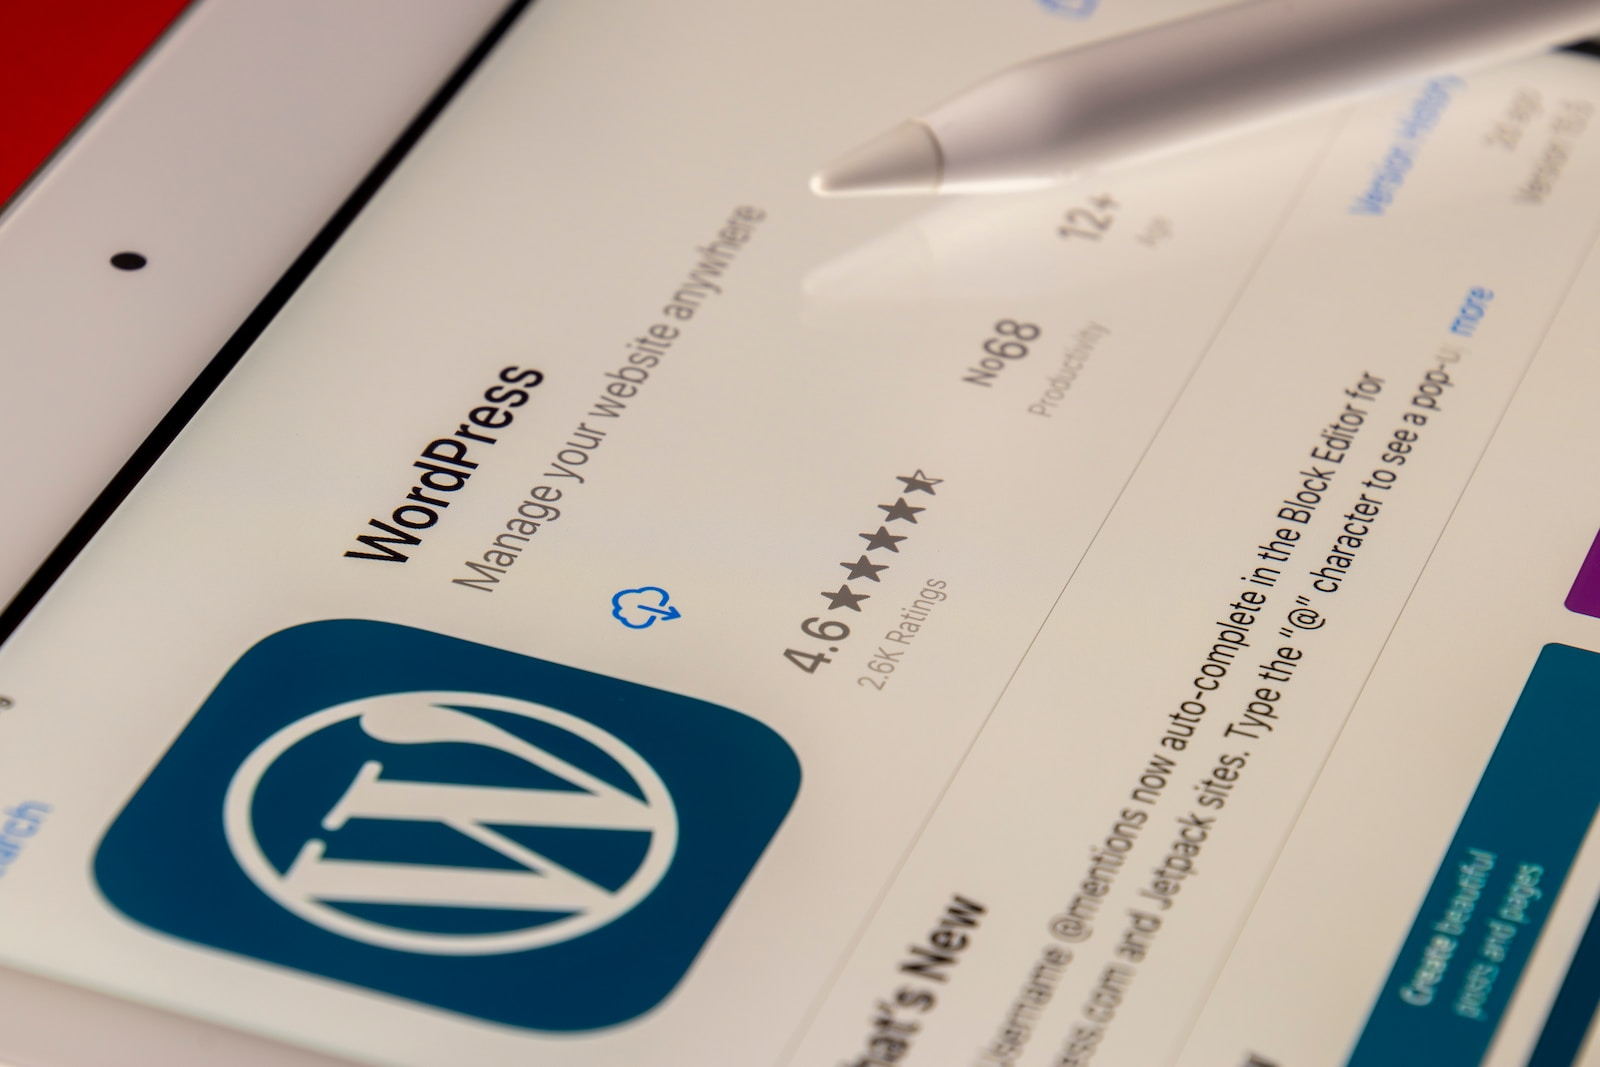 Moving to Wordpress ➡️